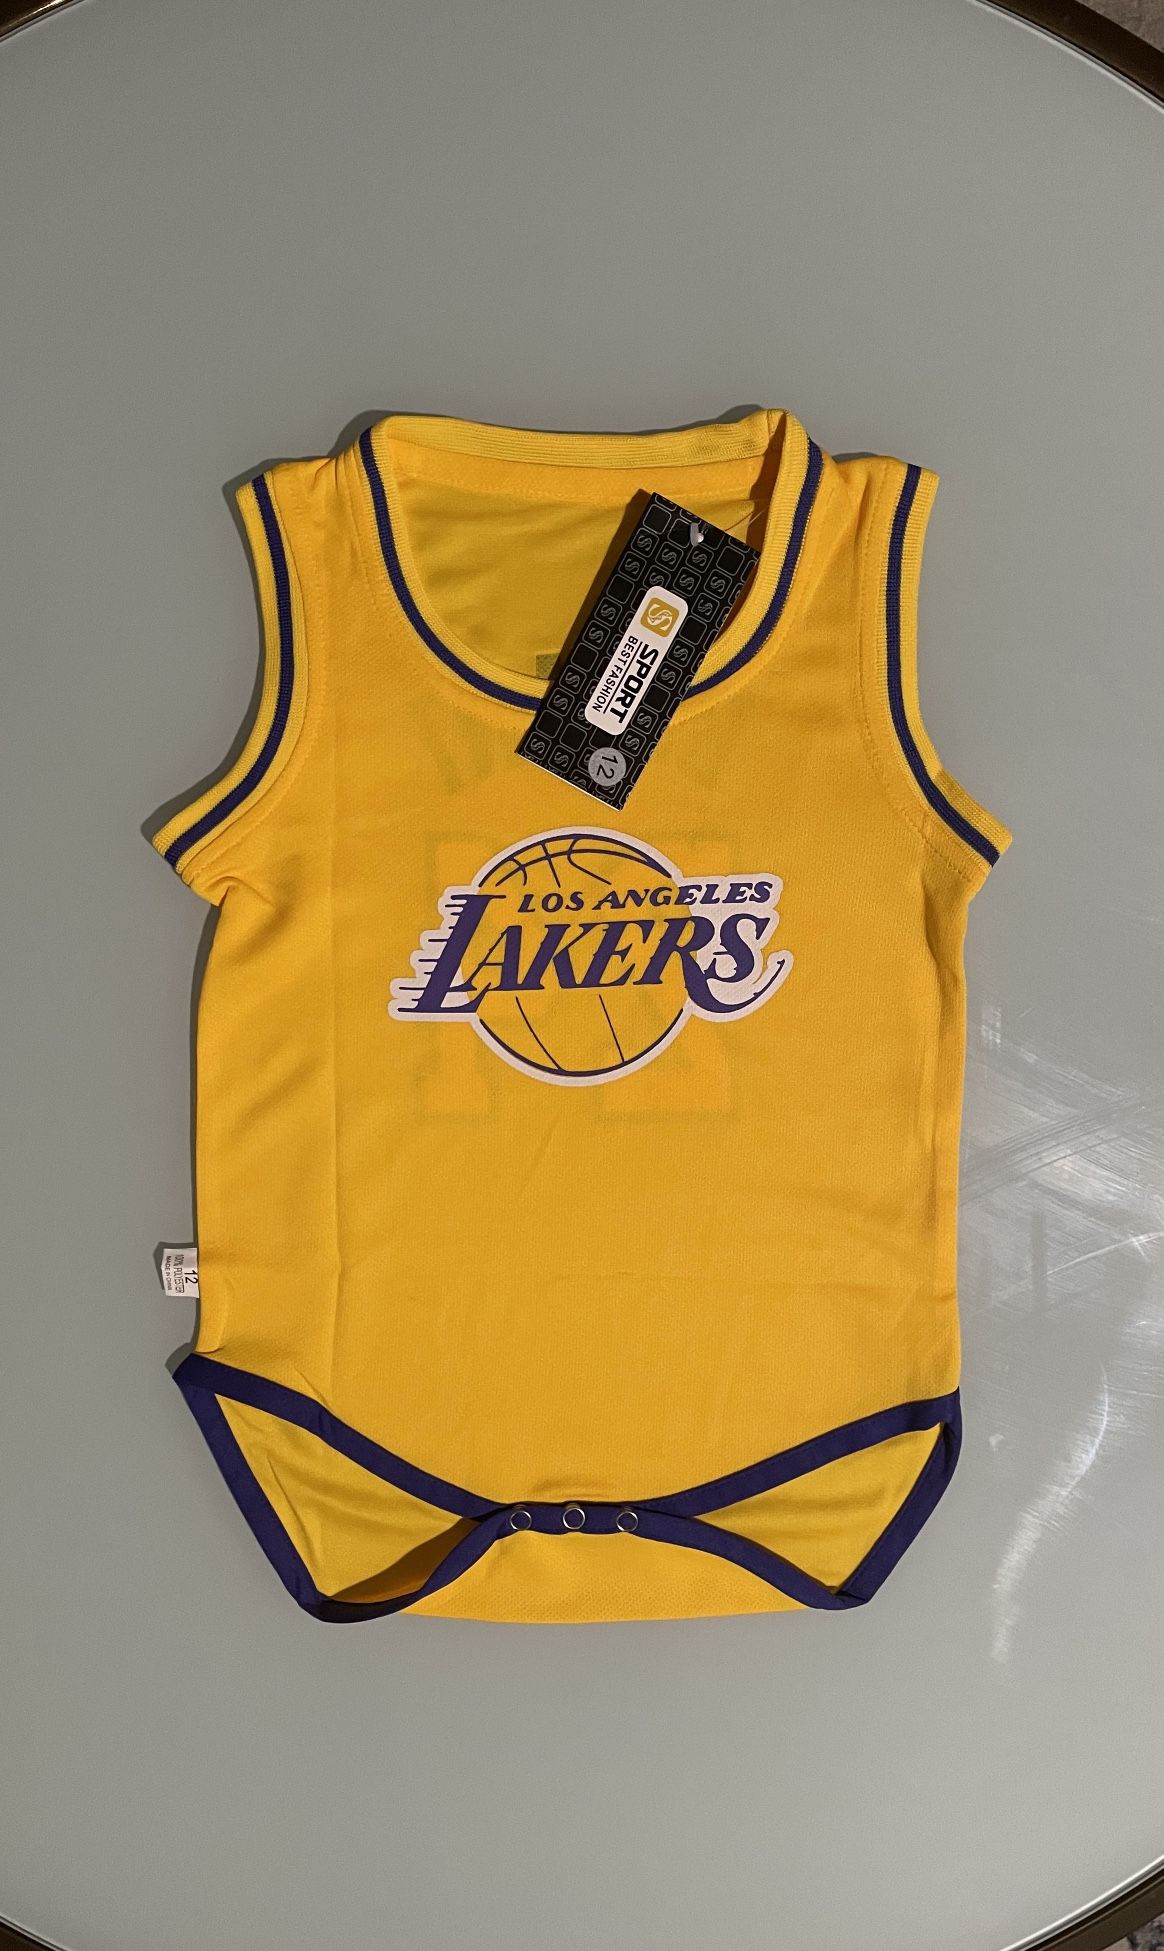 Los Angeles Lakers Kobe Bryant Baby Onesie Jersey 